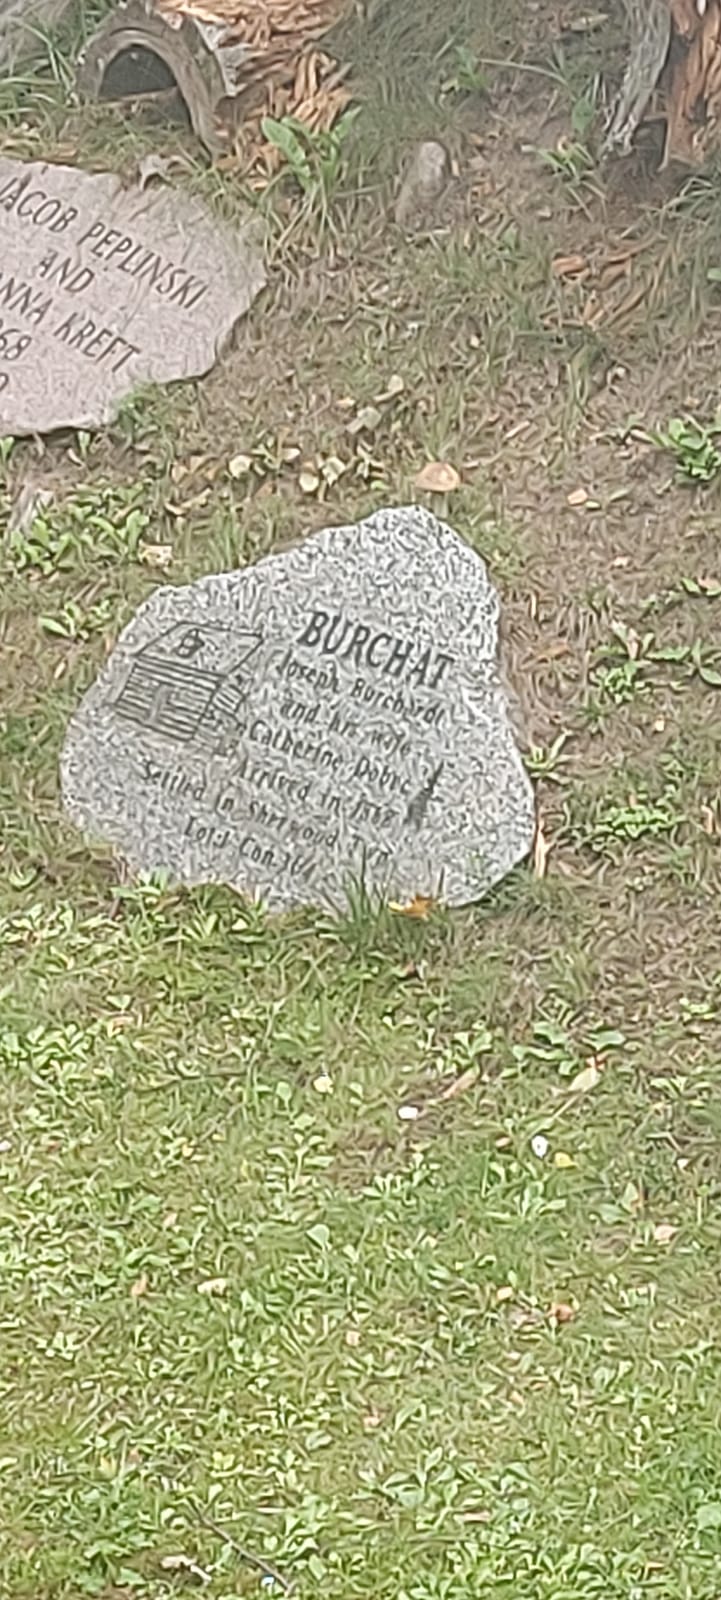 Kamienna tablica leżąca na ziemi, na niej napisy w innym języku.